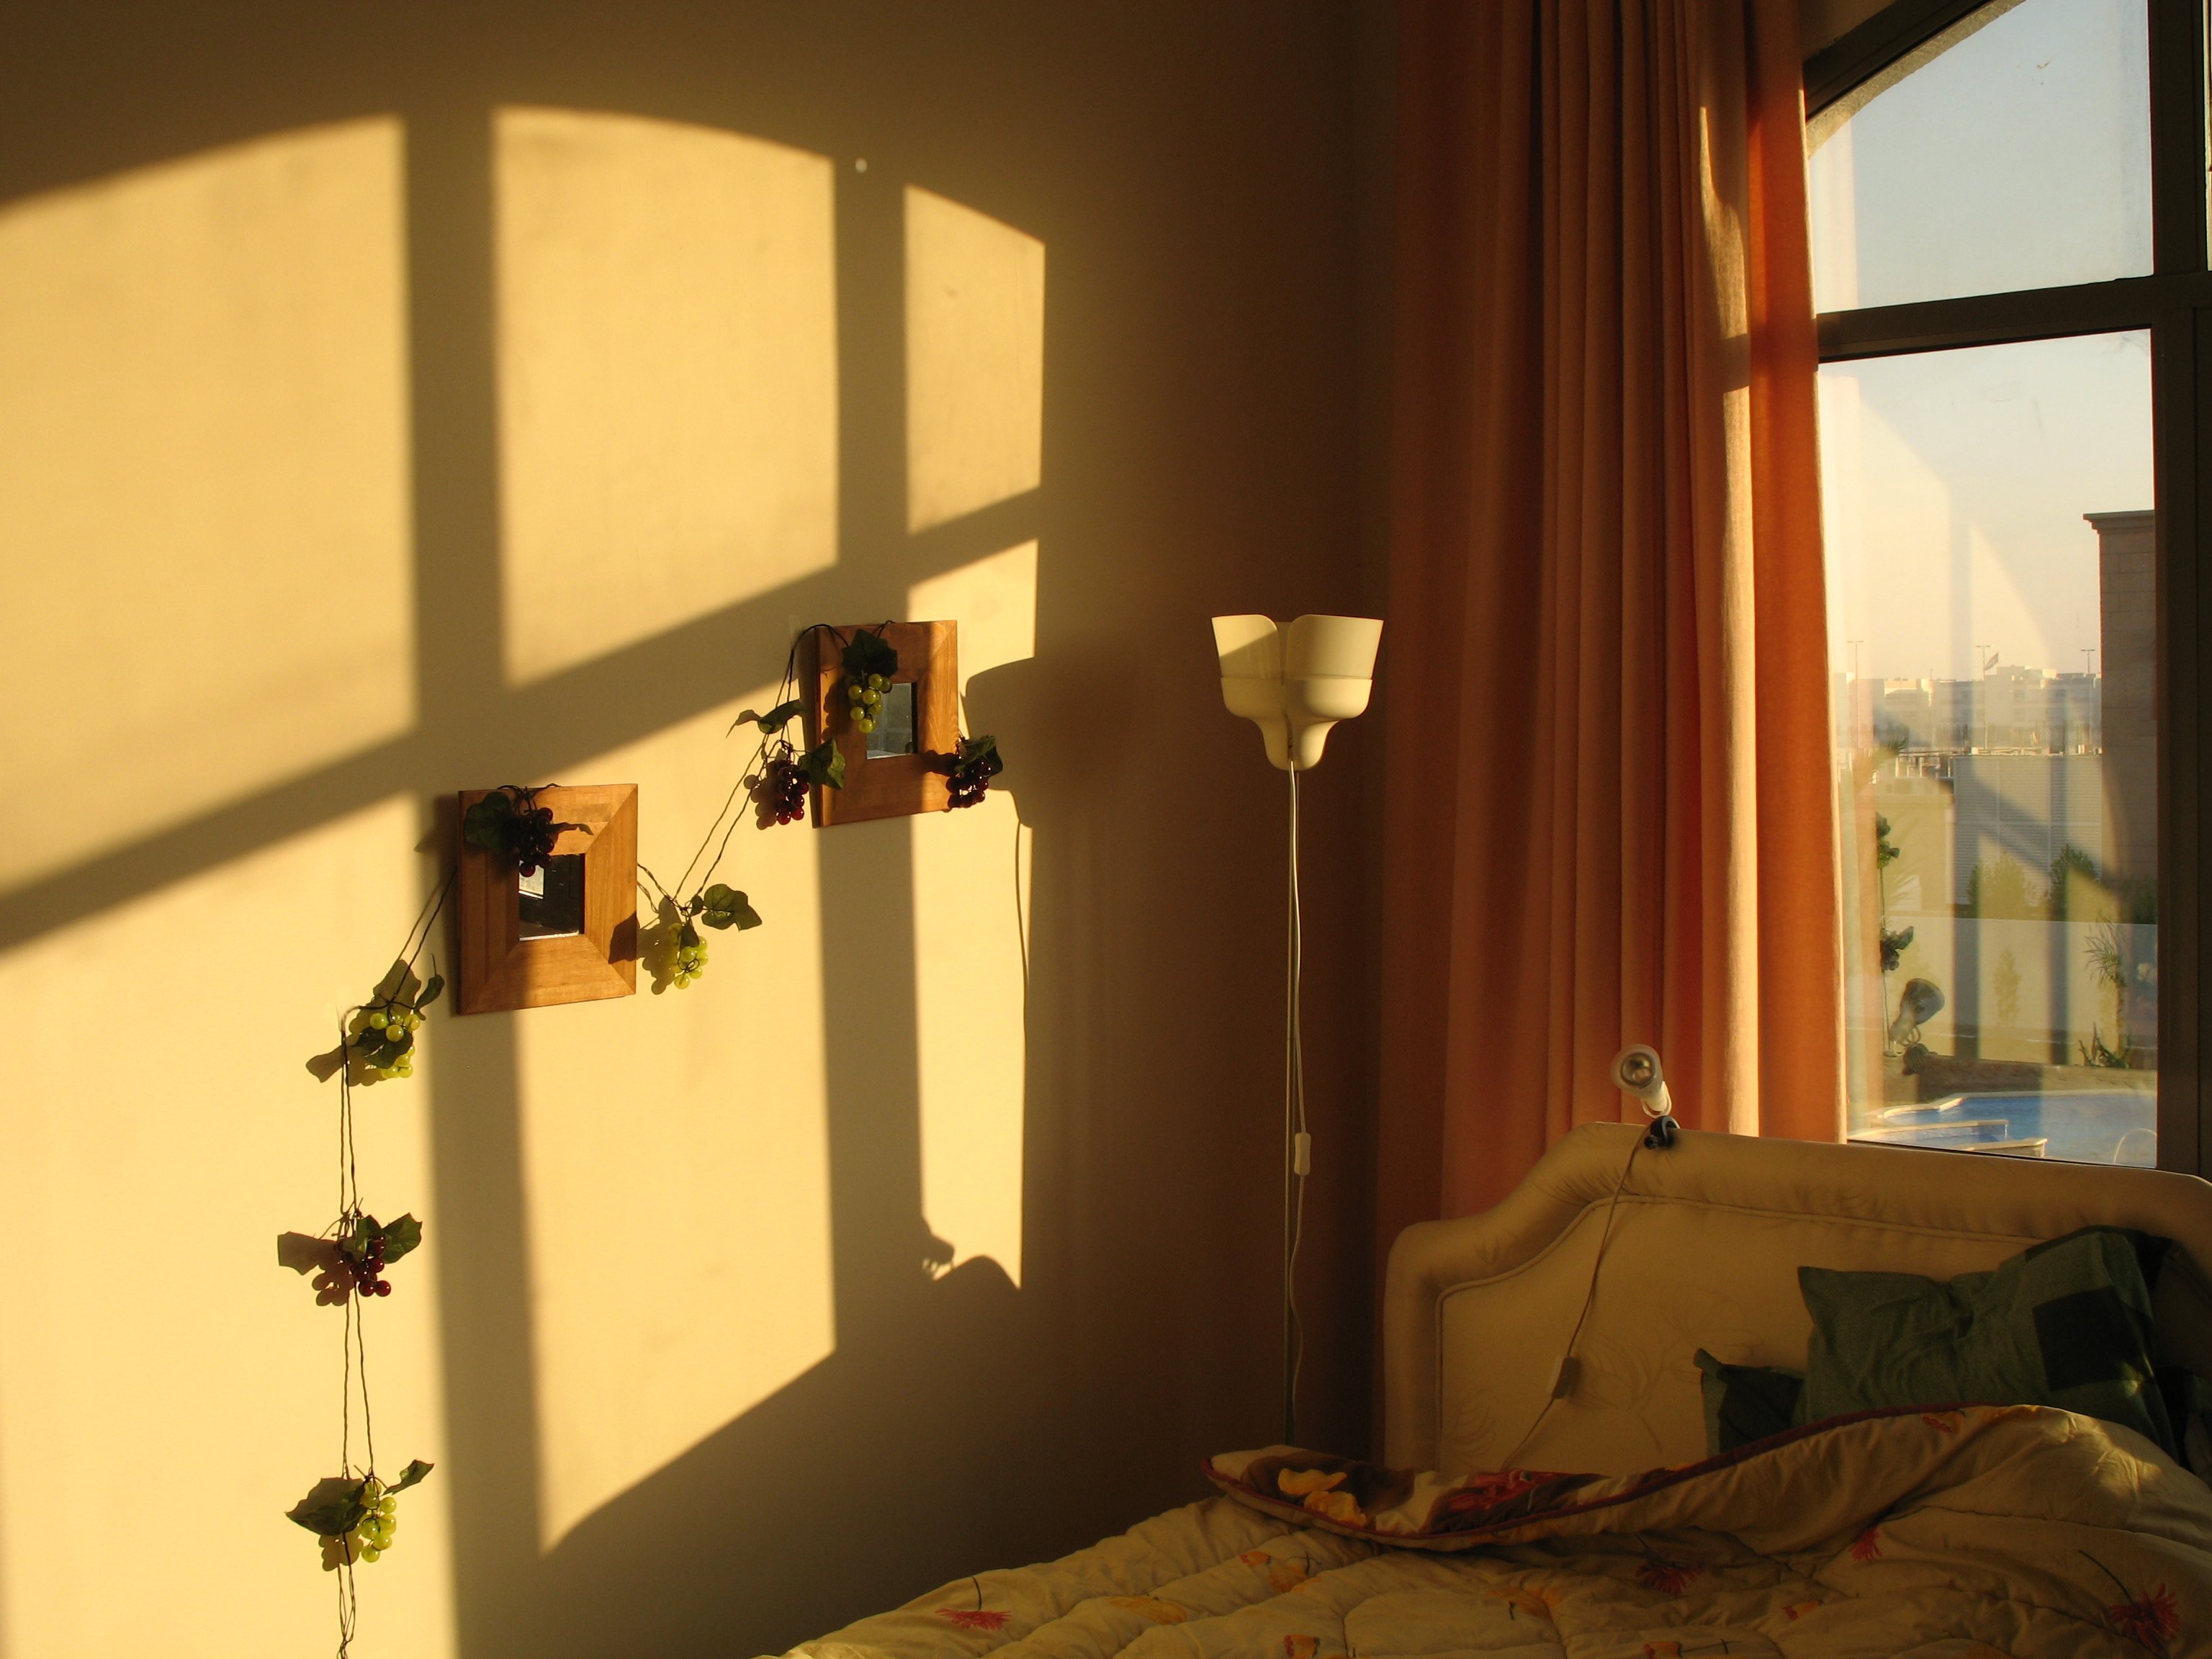 Одна комната солнечный свет ангел дата выхода. Солнечный свет в комнате. Утреннее освещение в комнате. Солнце в комнате. Солнечное утро в комнате.